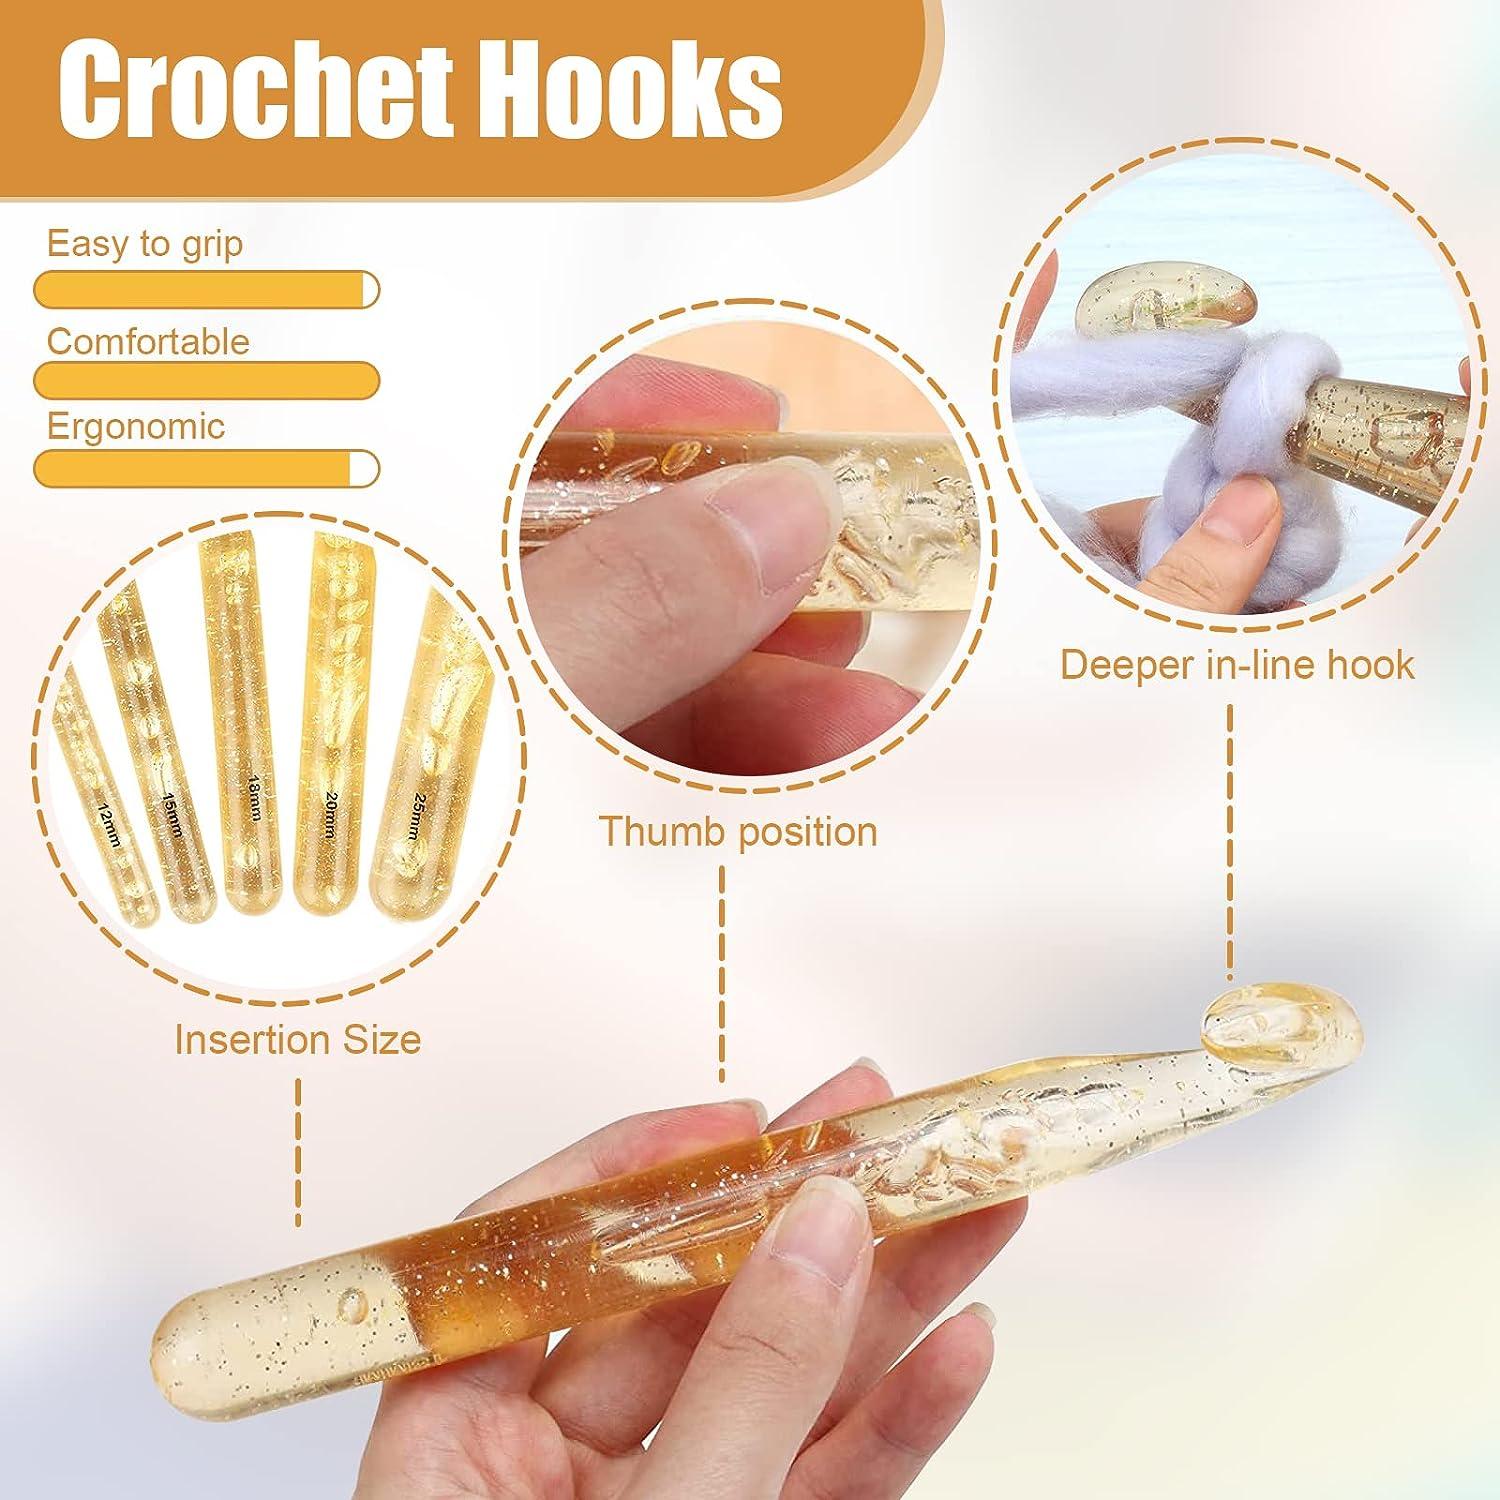 ergonomic crochet hook handle  Custom crochet hooks, Crochet